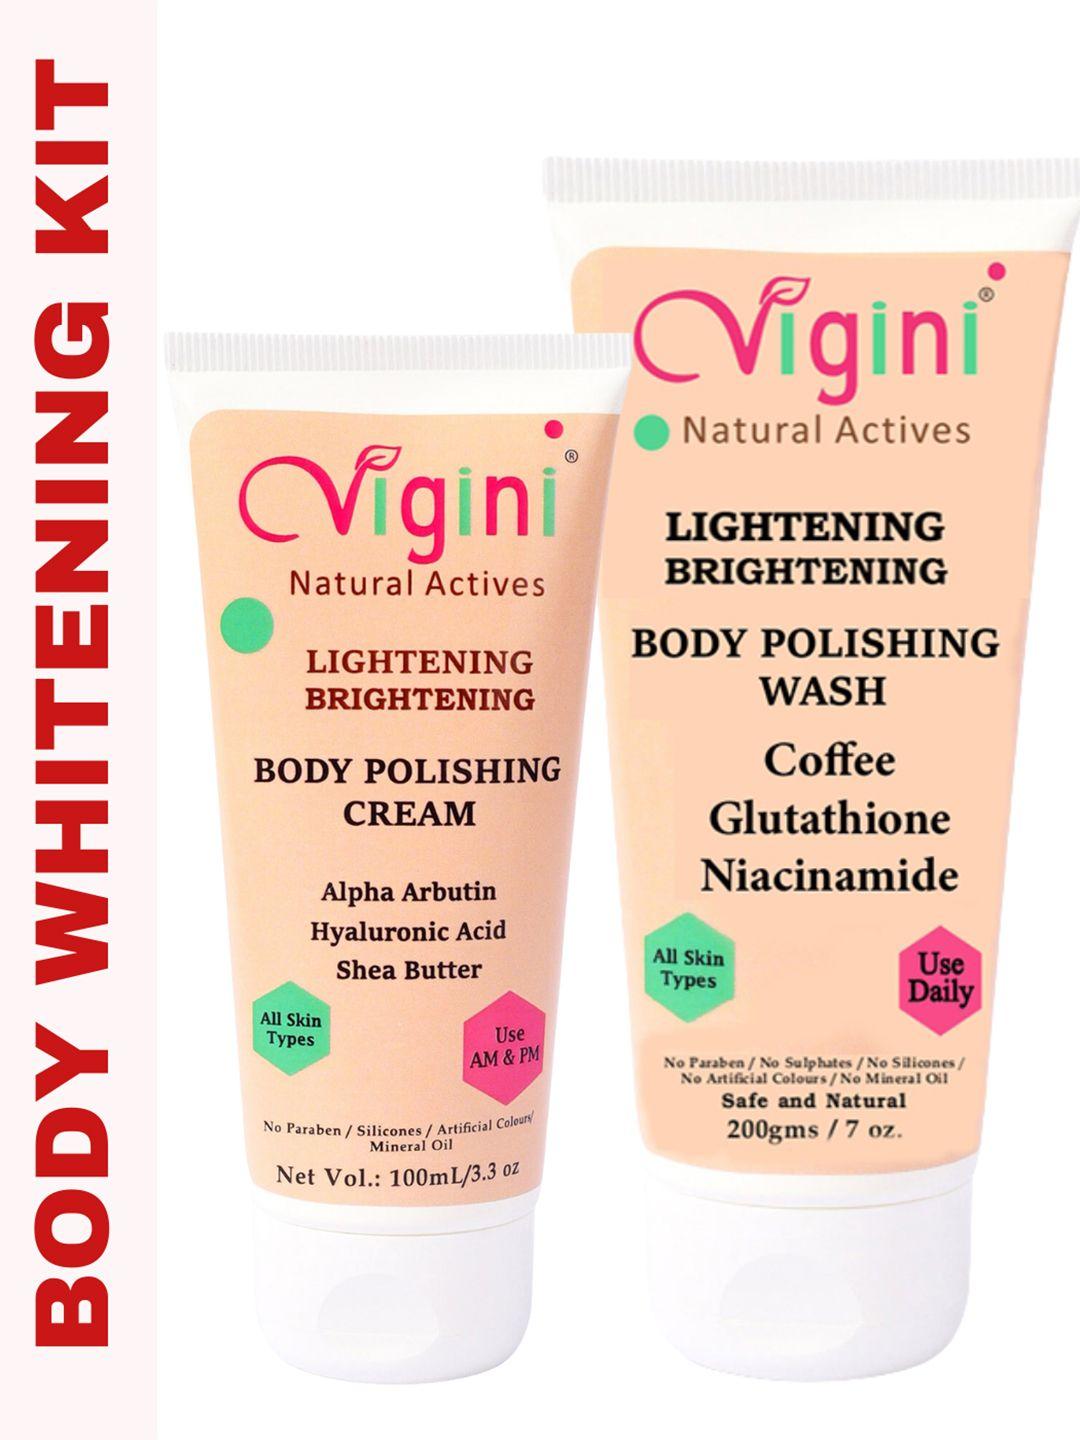 vigini body polishing wash & cream kit